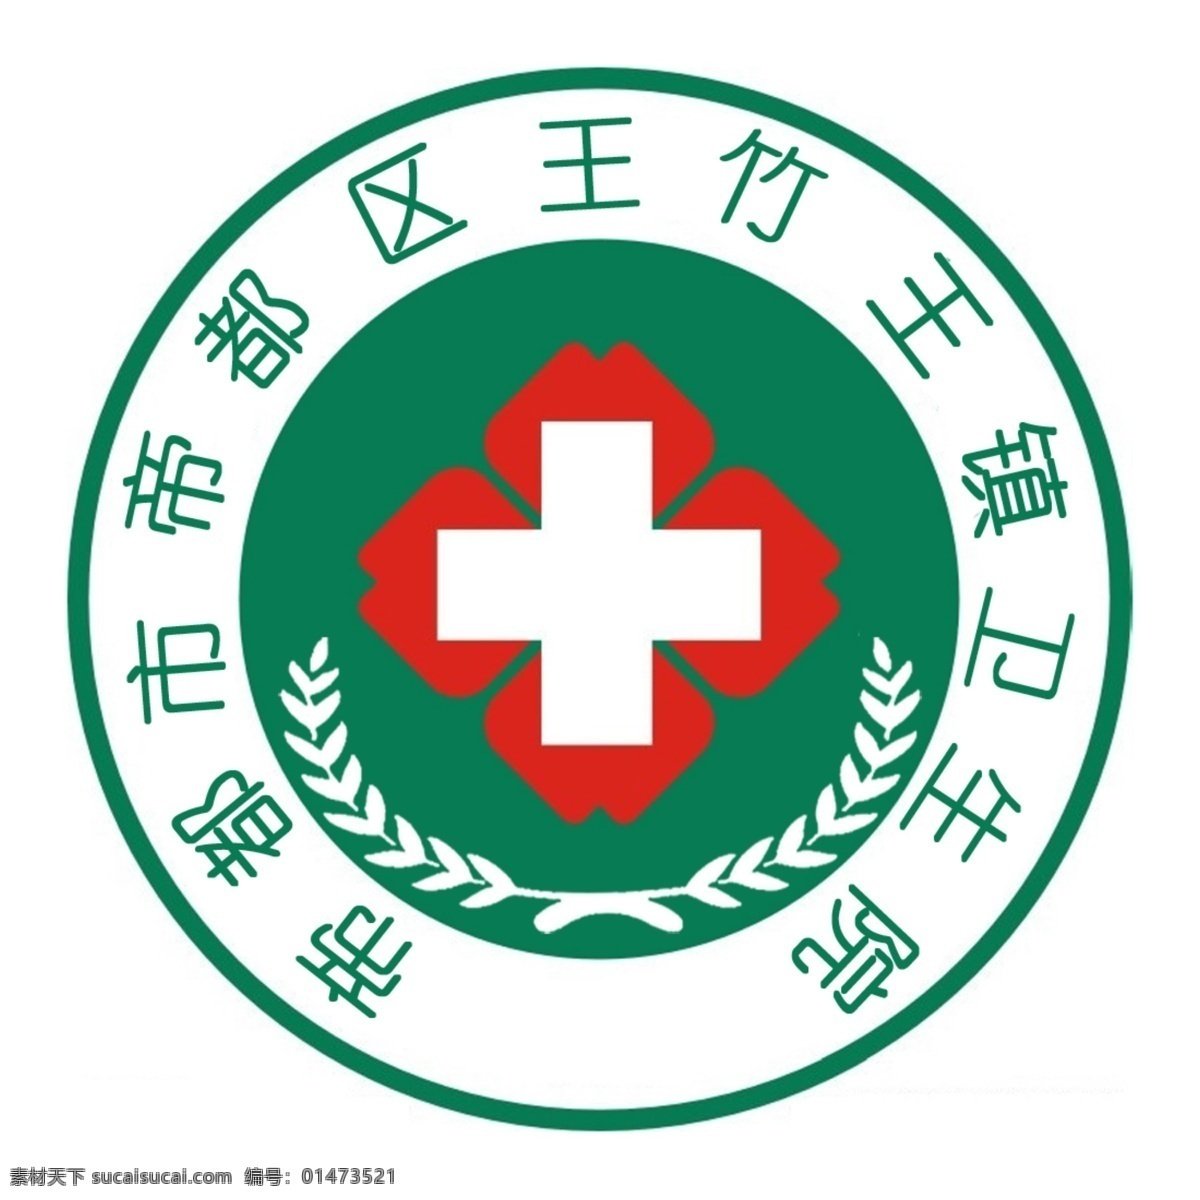 医院 卫生院 医院标志 logo 医院logo 红十字 救 抢救 救助 救死扶伤